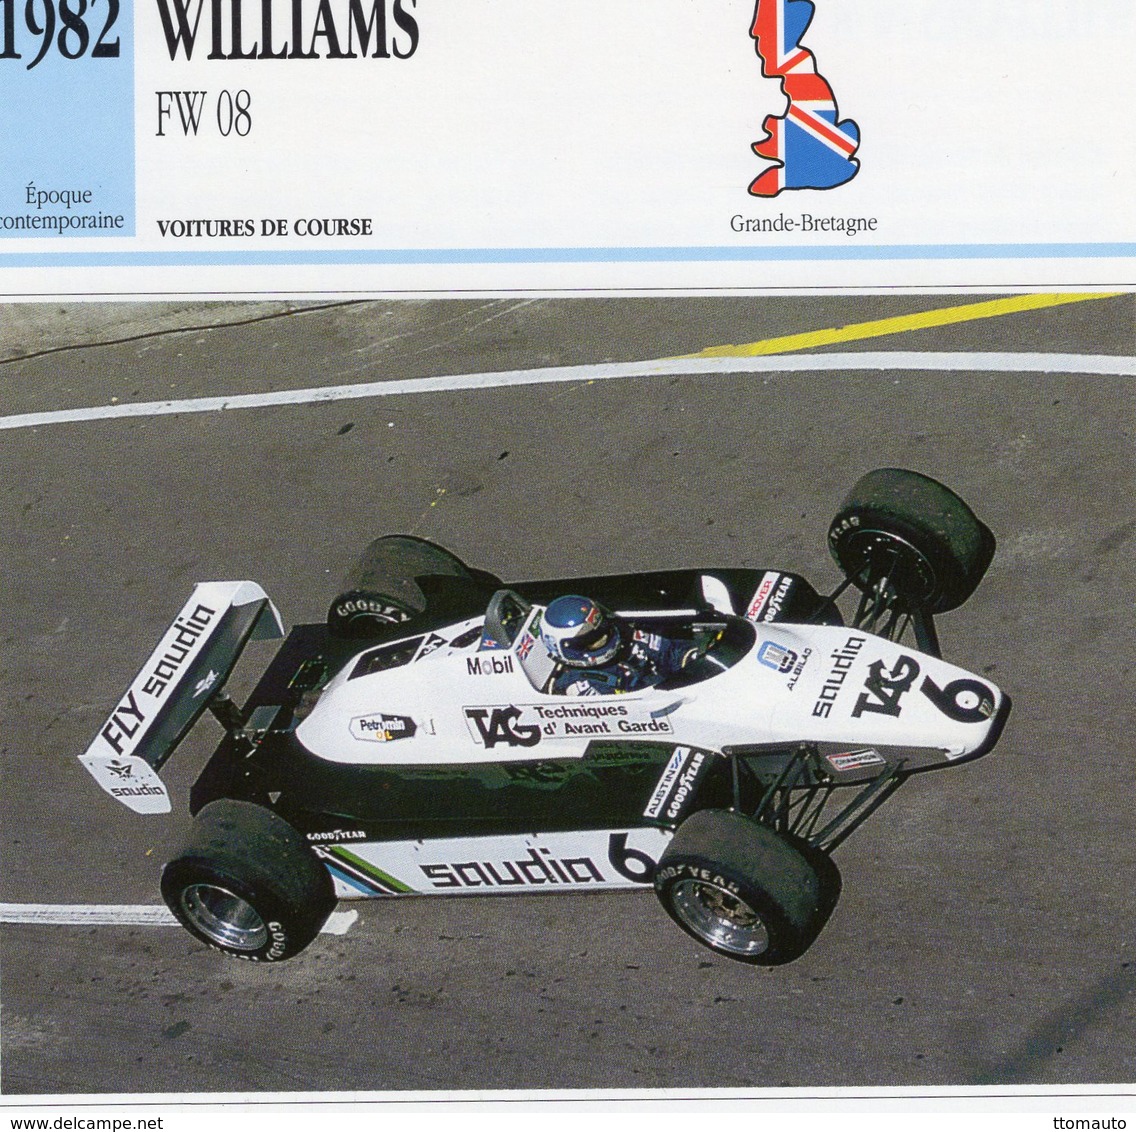 Williams FW08  F1 Grand Prix (1982) - Voiture De Course - Keke Rosberg -  Fiche Technique/Carte De Collection - Grand Prix / F1